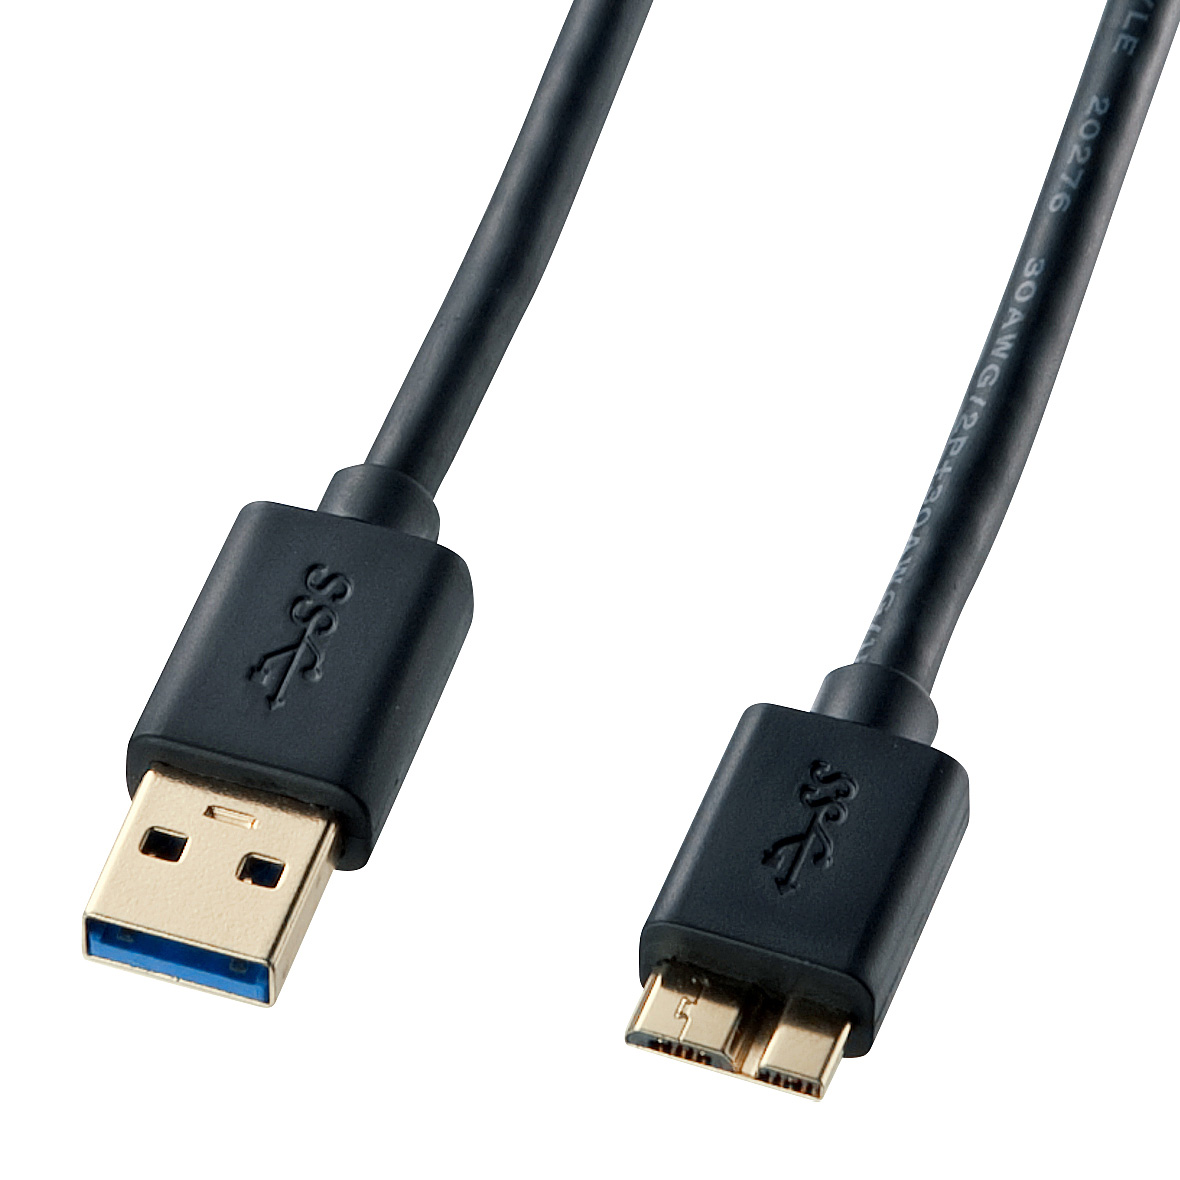 對應USB 3.0/3.1的Micro電纜線 KU30-AMC18BK